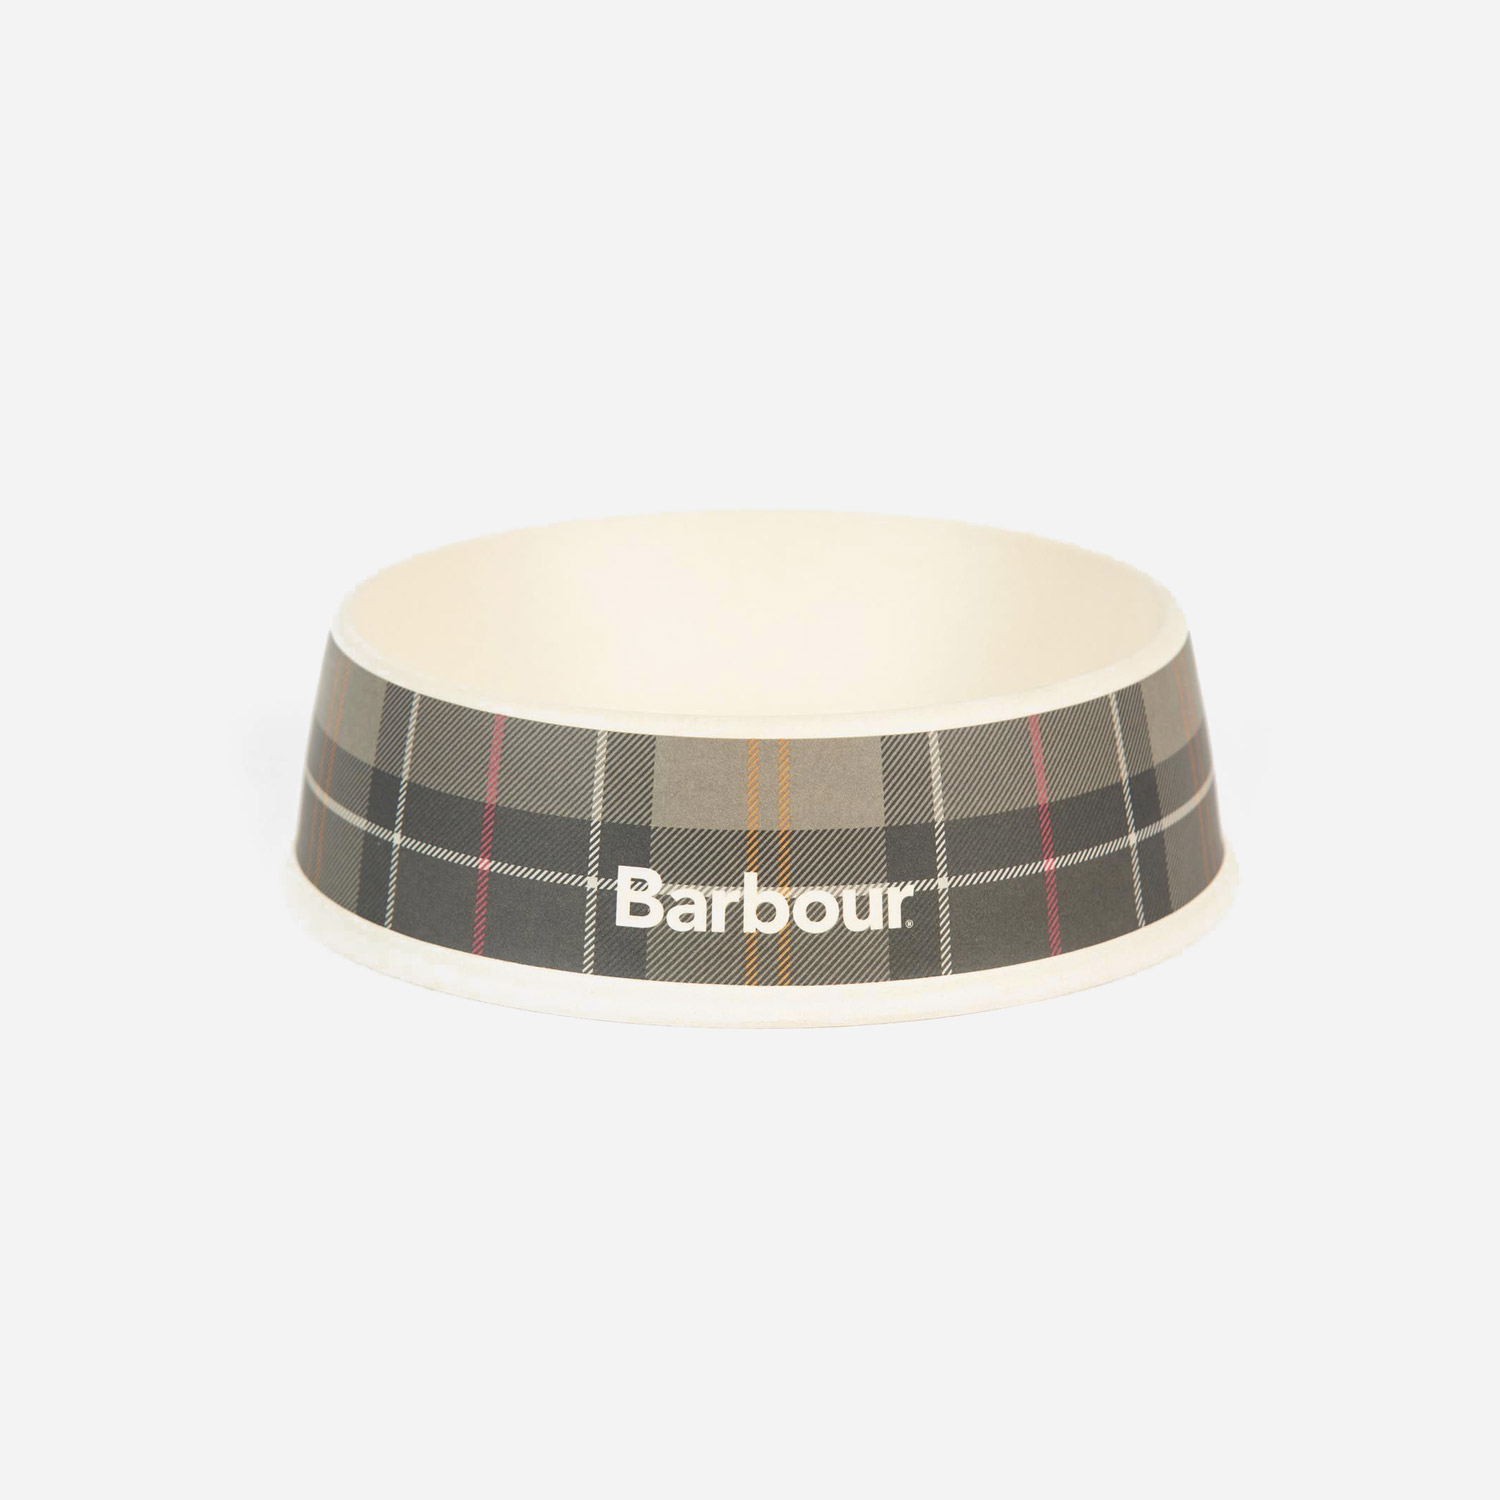 Barbour Tartan Dog Bowl - Classic